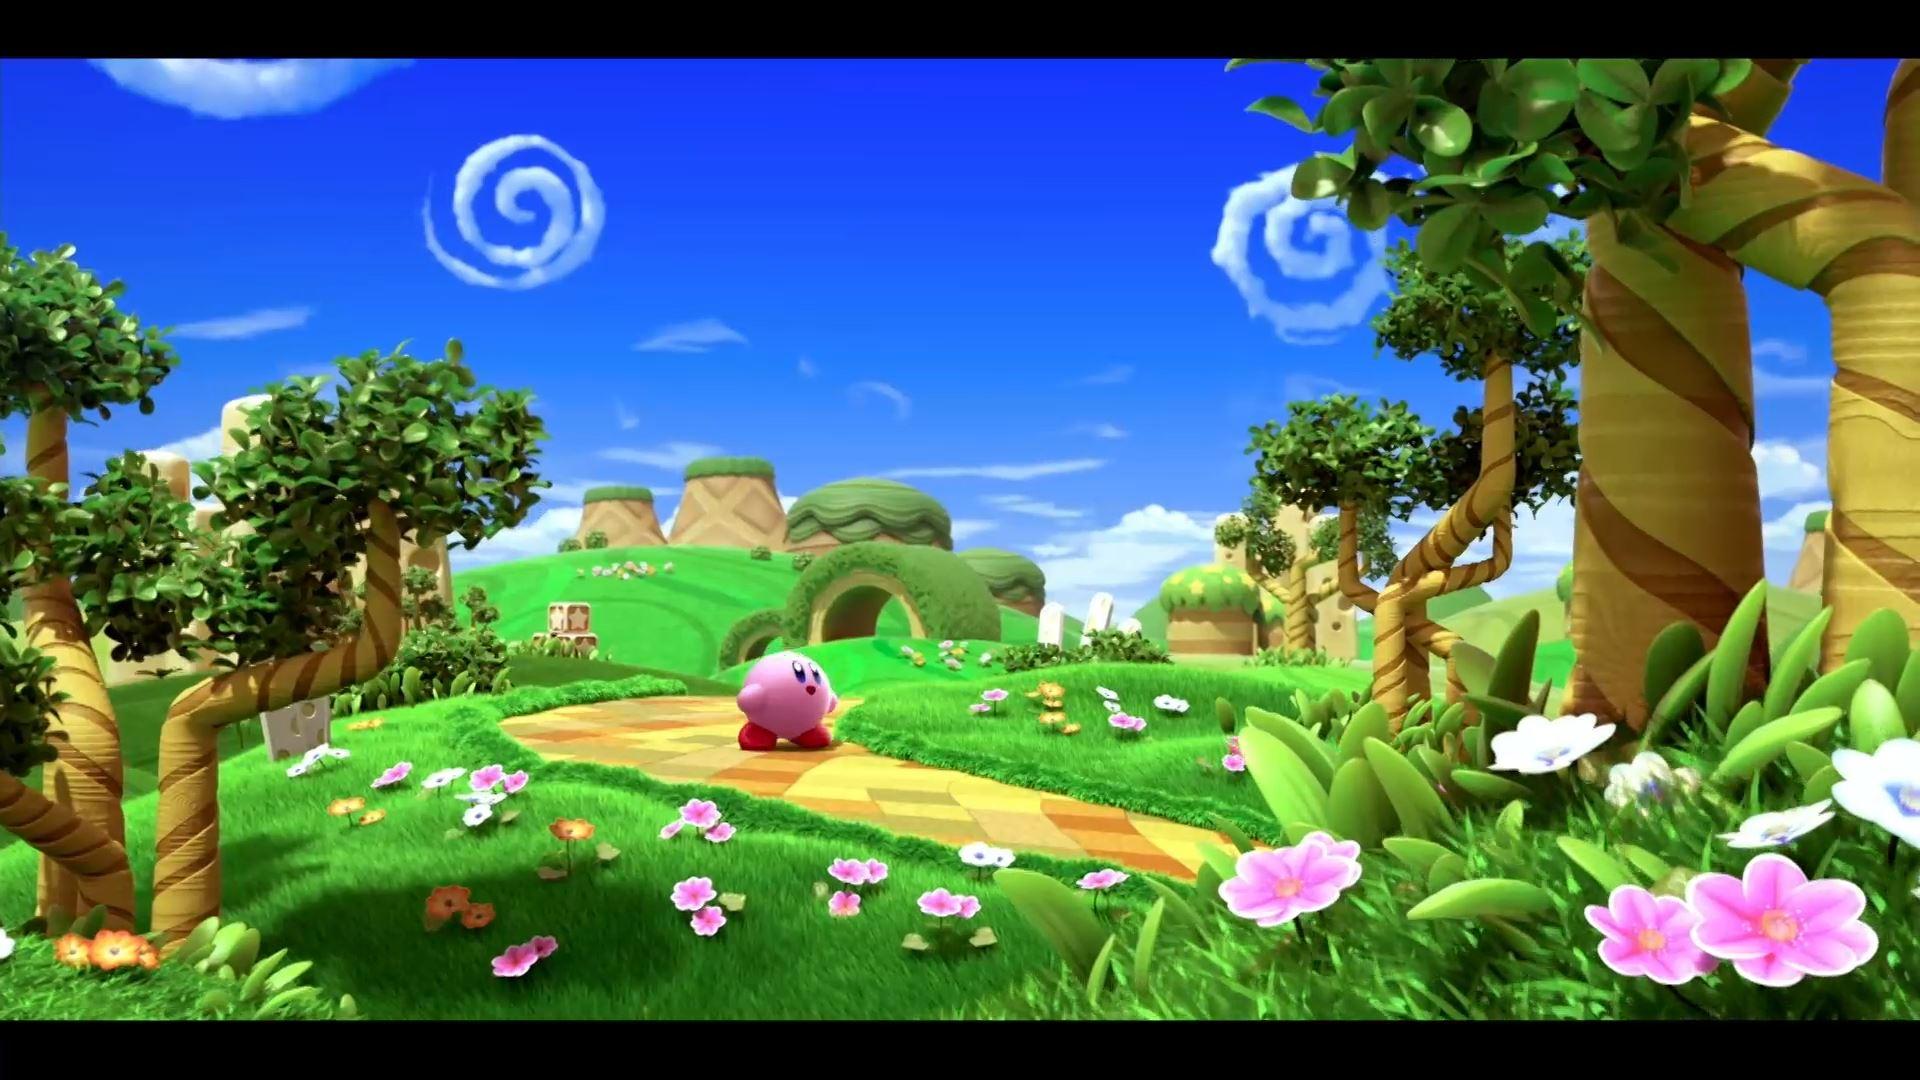 Tổng hợp 500 Kirby background game đẹp nhất để tải về miễn phí